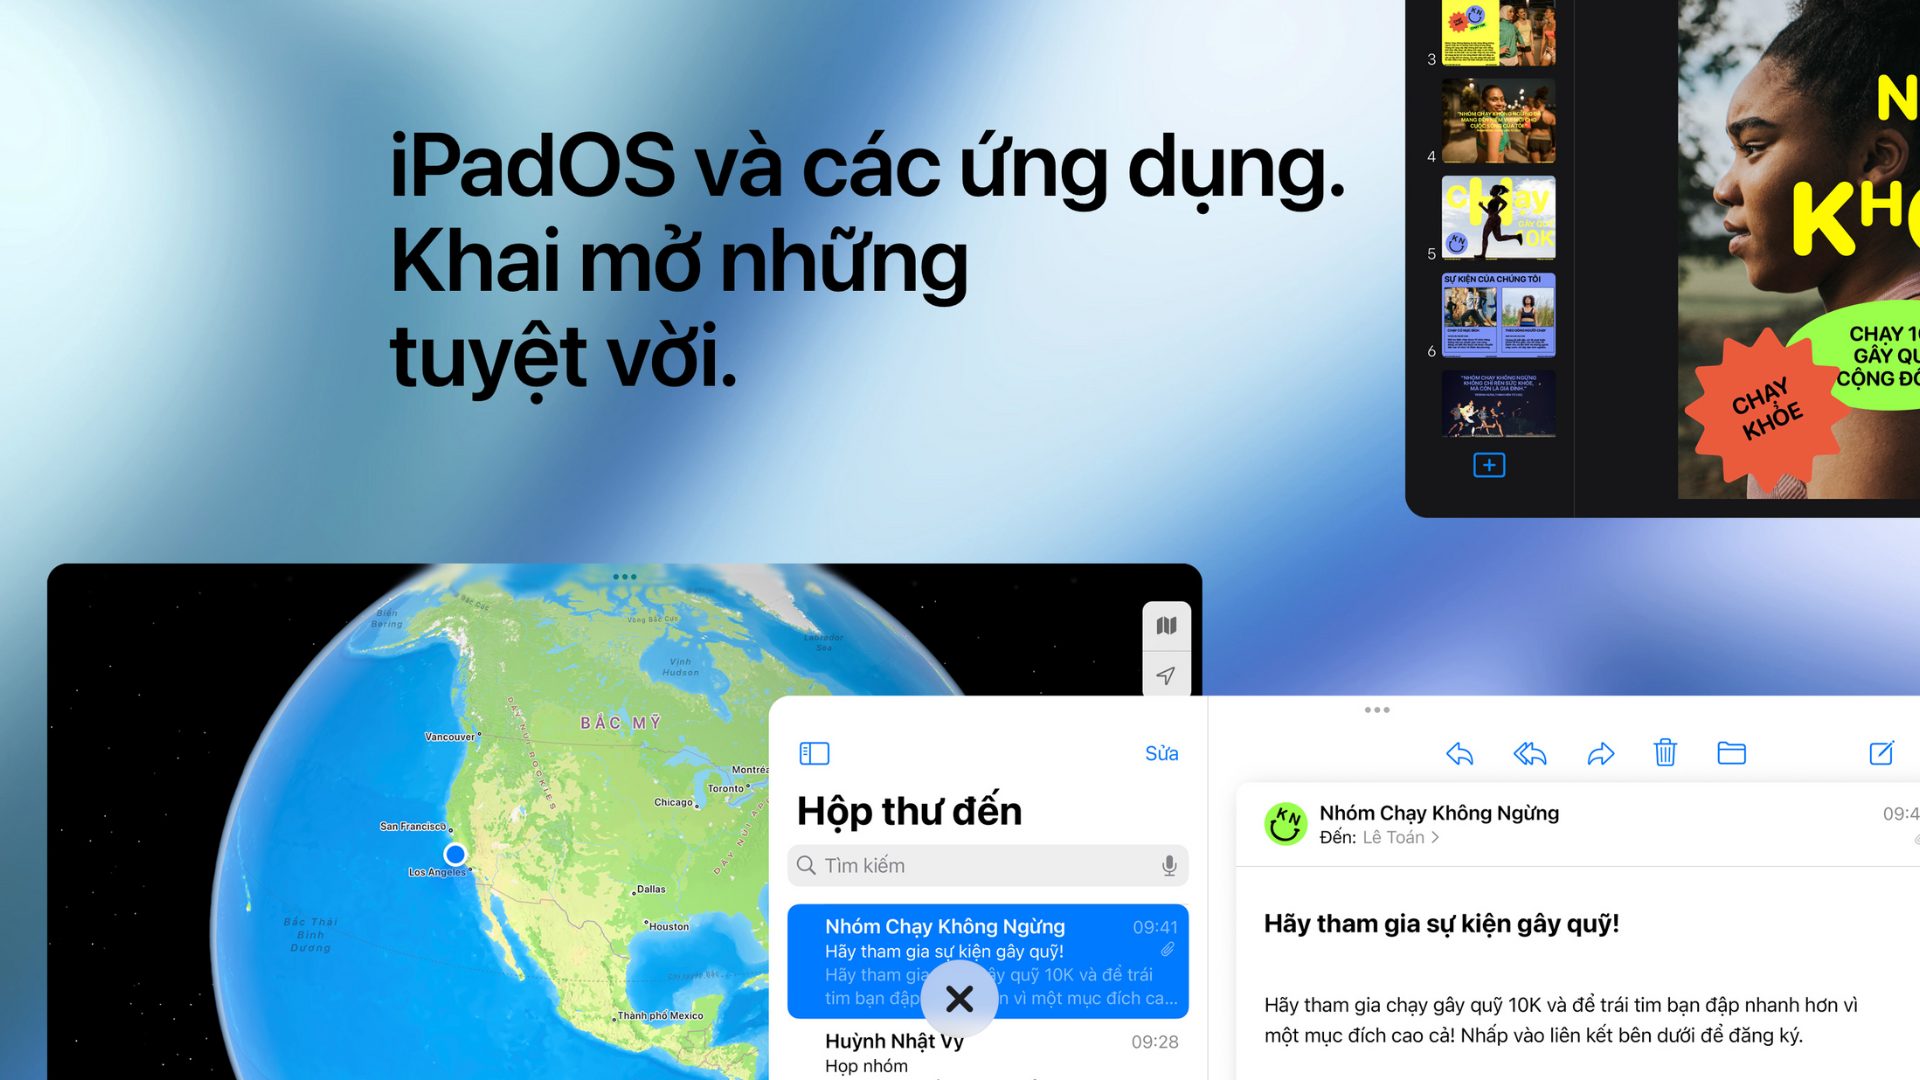 iPadOS có nhiều tính năng tuyệt vời cho người dùng